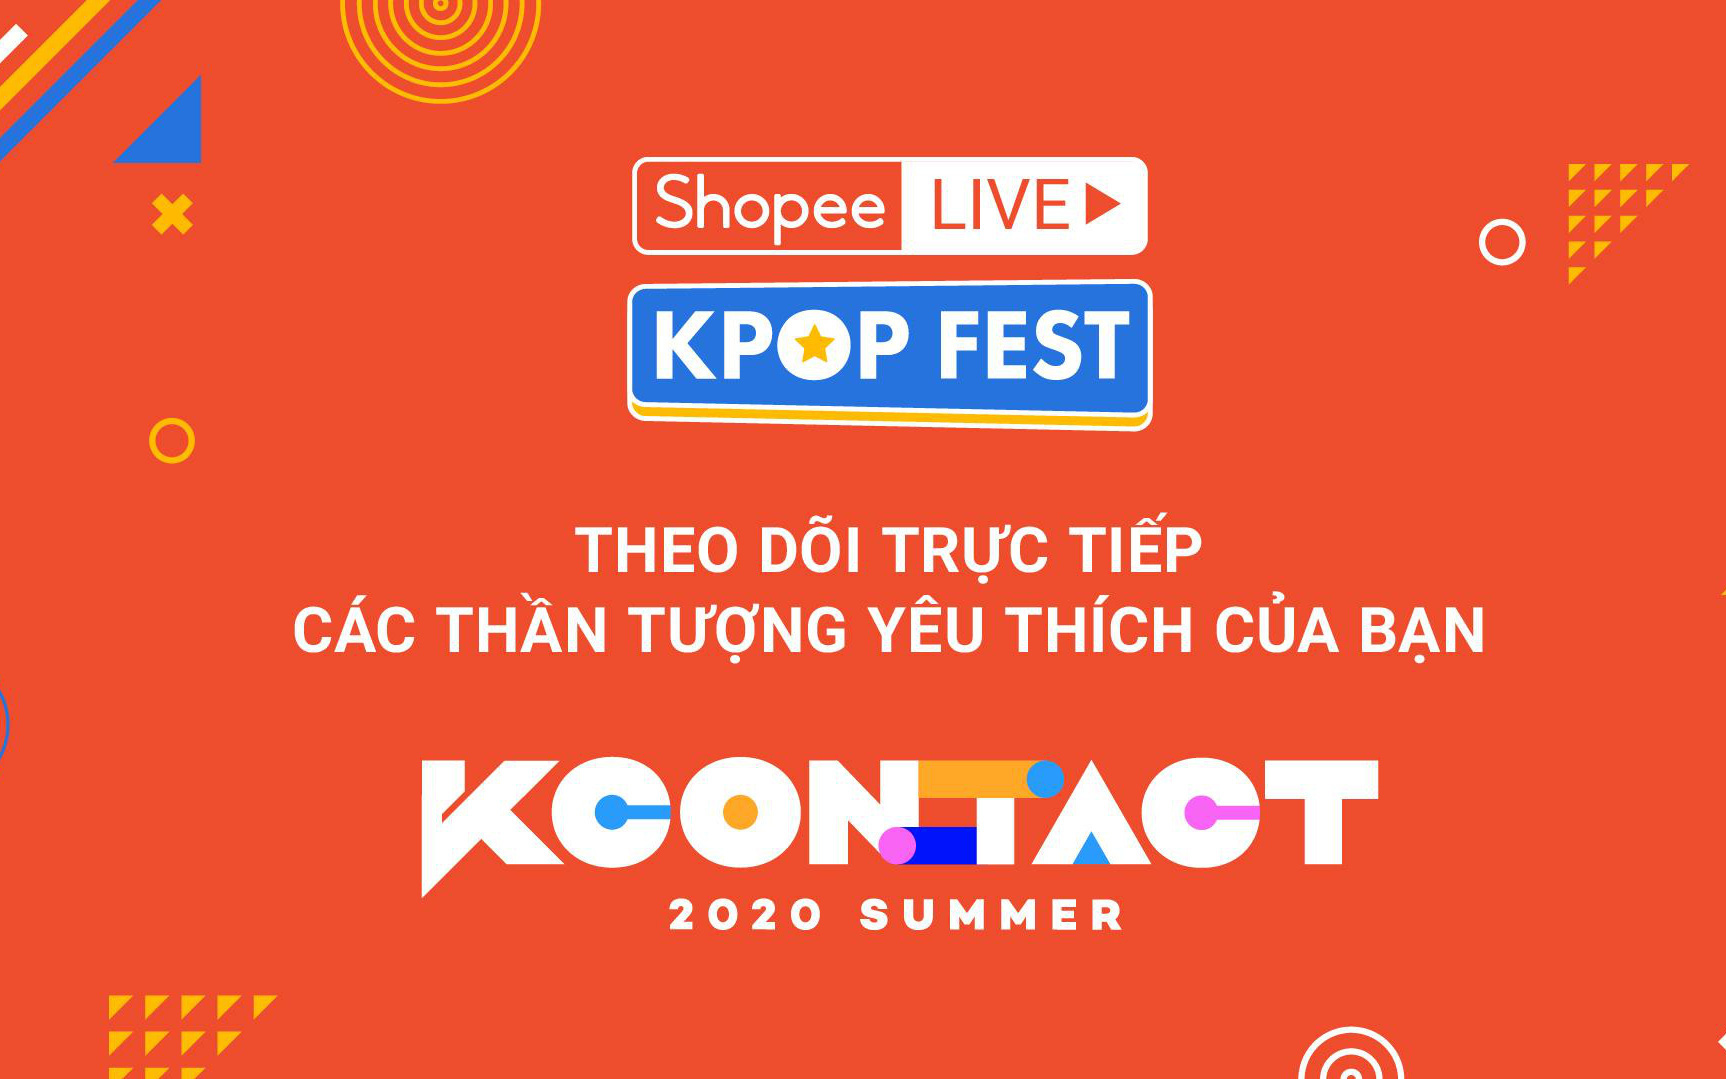 Shopee hợp tác cùng CJ ENM mang đến chương trình KCON, lễ hội văn hóa Hàn Quốc hàng đầu thế giới, với sự góp mặt của các hiện tượng Kpop GFRIEND, ITZY, MAMAMOO, Stray Kids và nhiều thần tượng khác